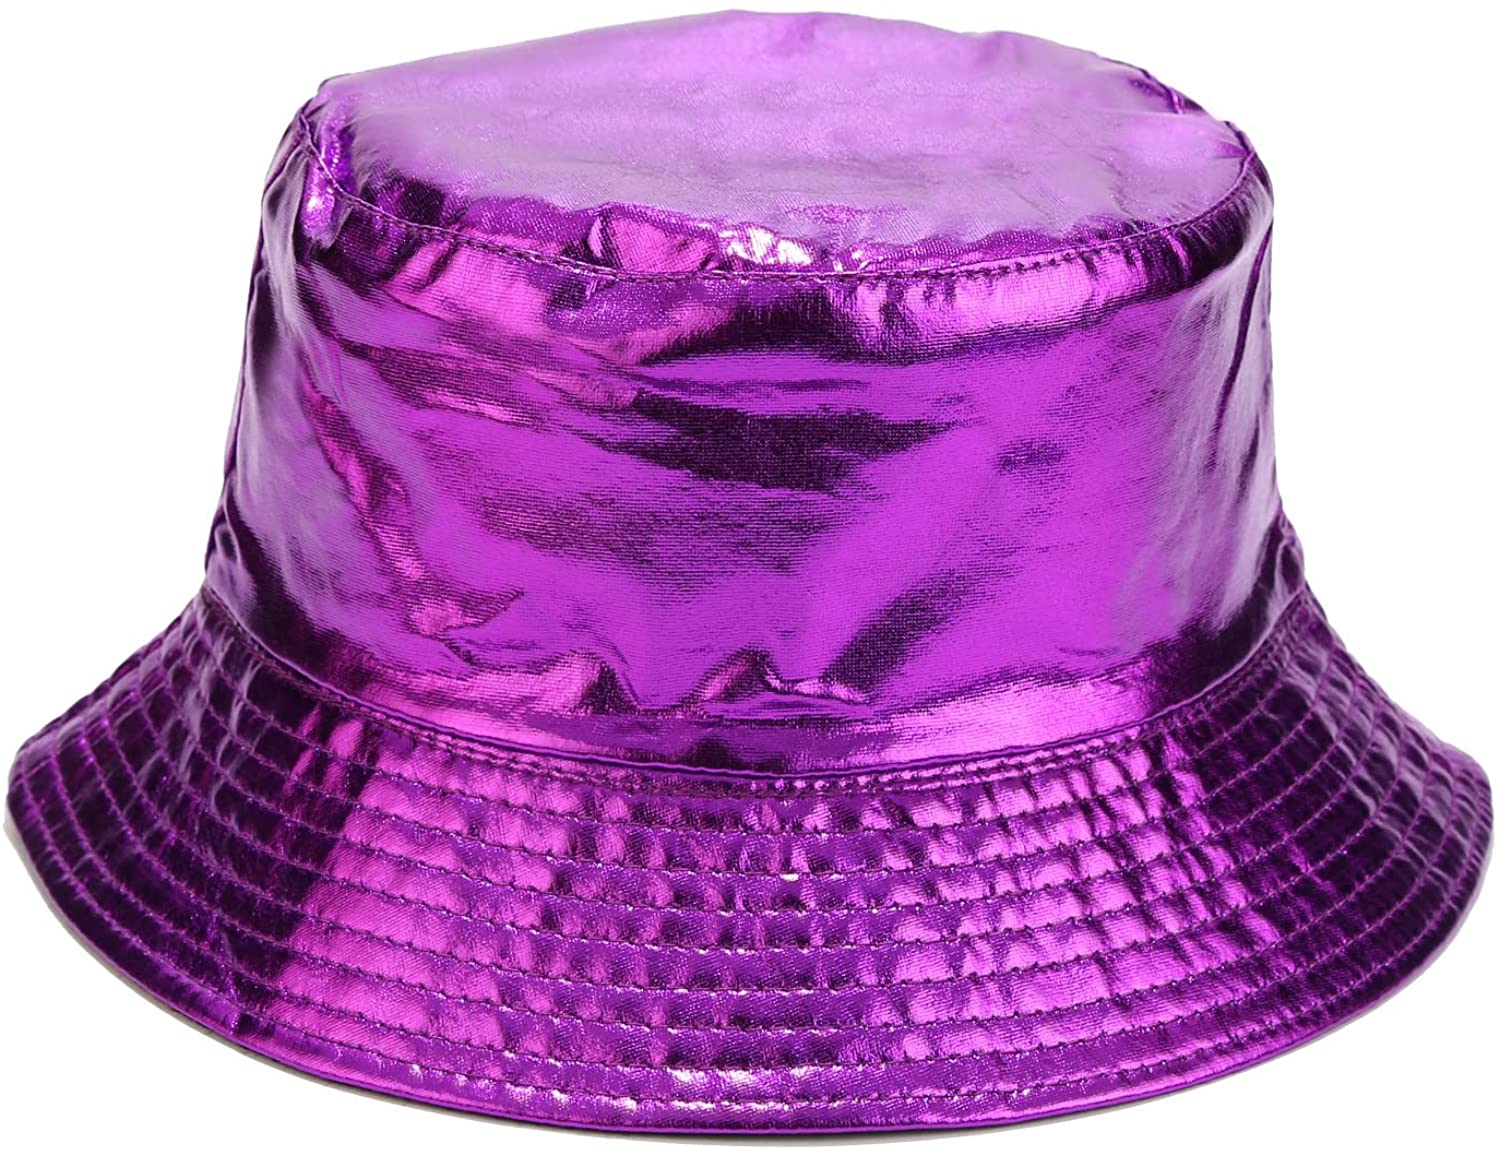 Joylife Metallic Bucket Hat Trendy Fisherman Hats Unisex Reversible Packable Cap